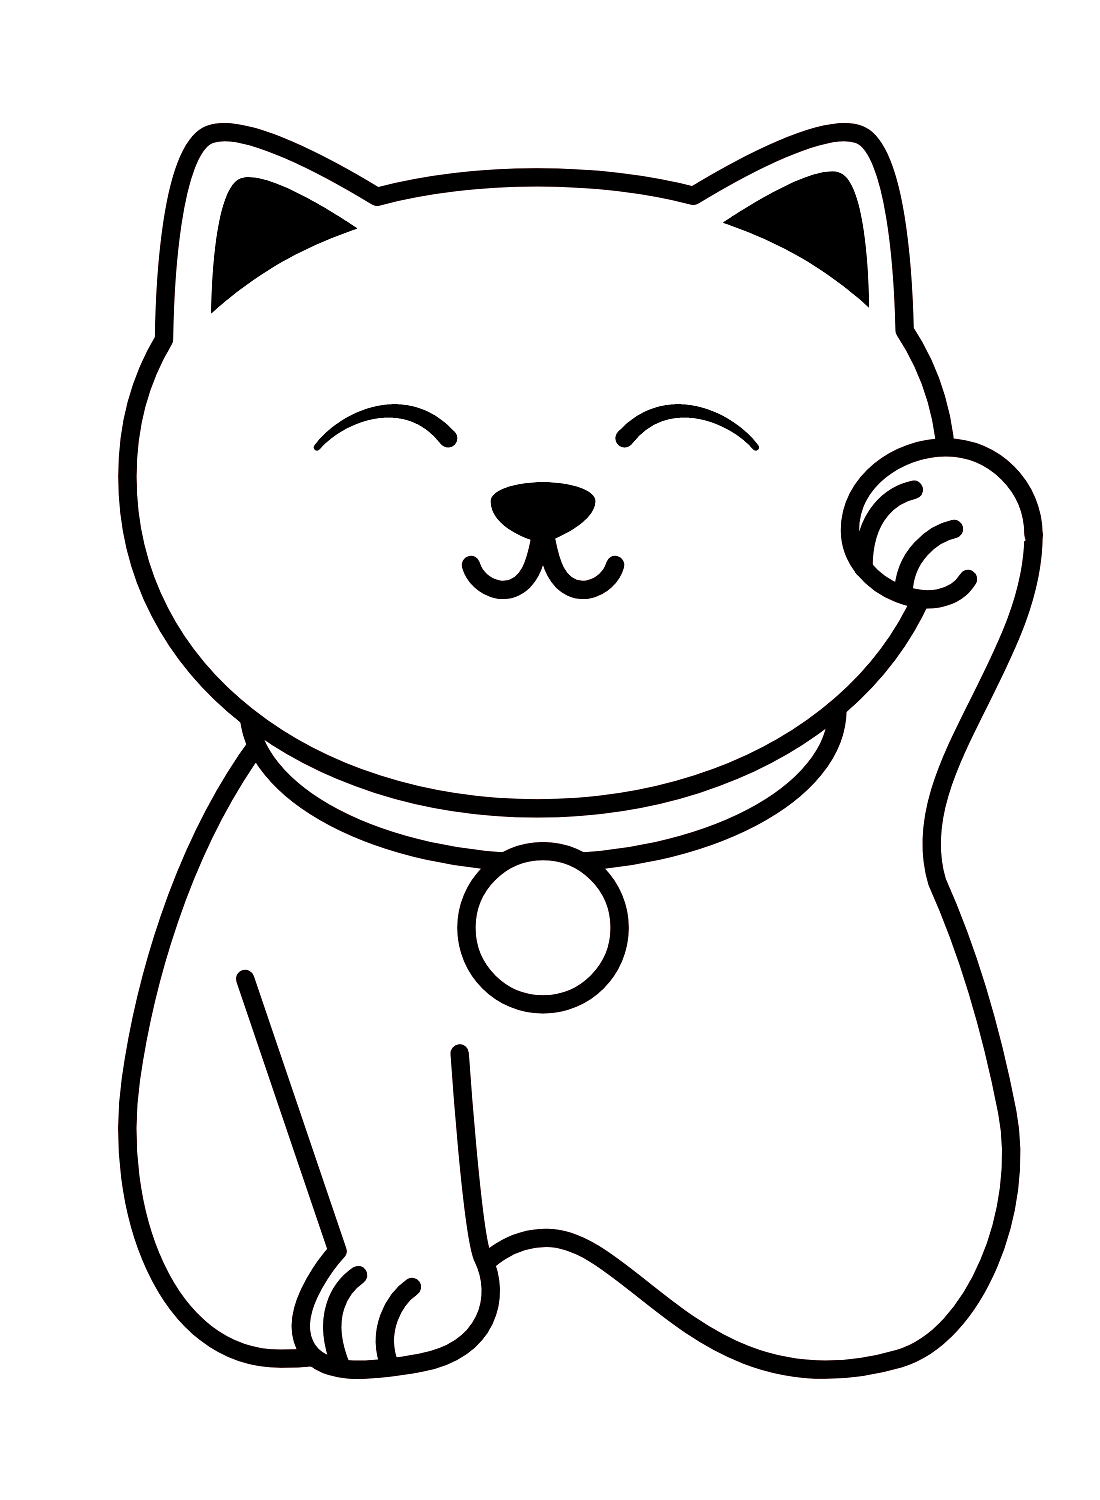 القطة المحظوظة من اليابان